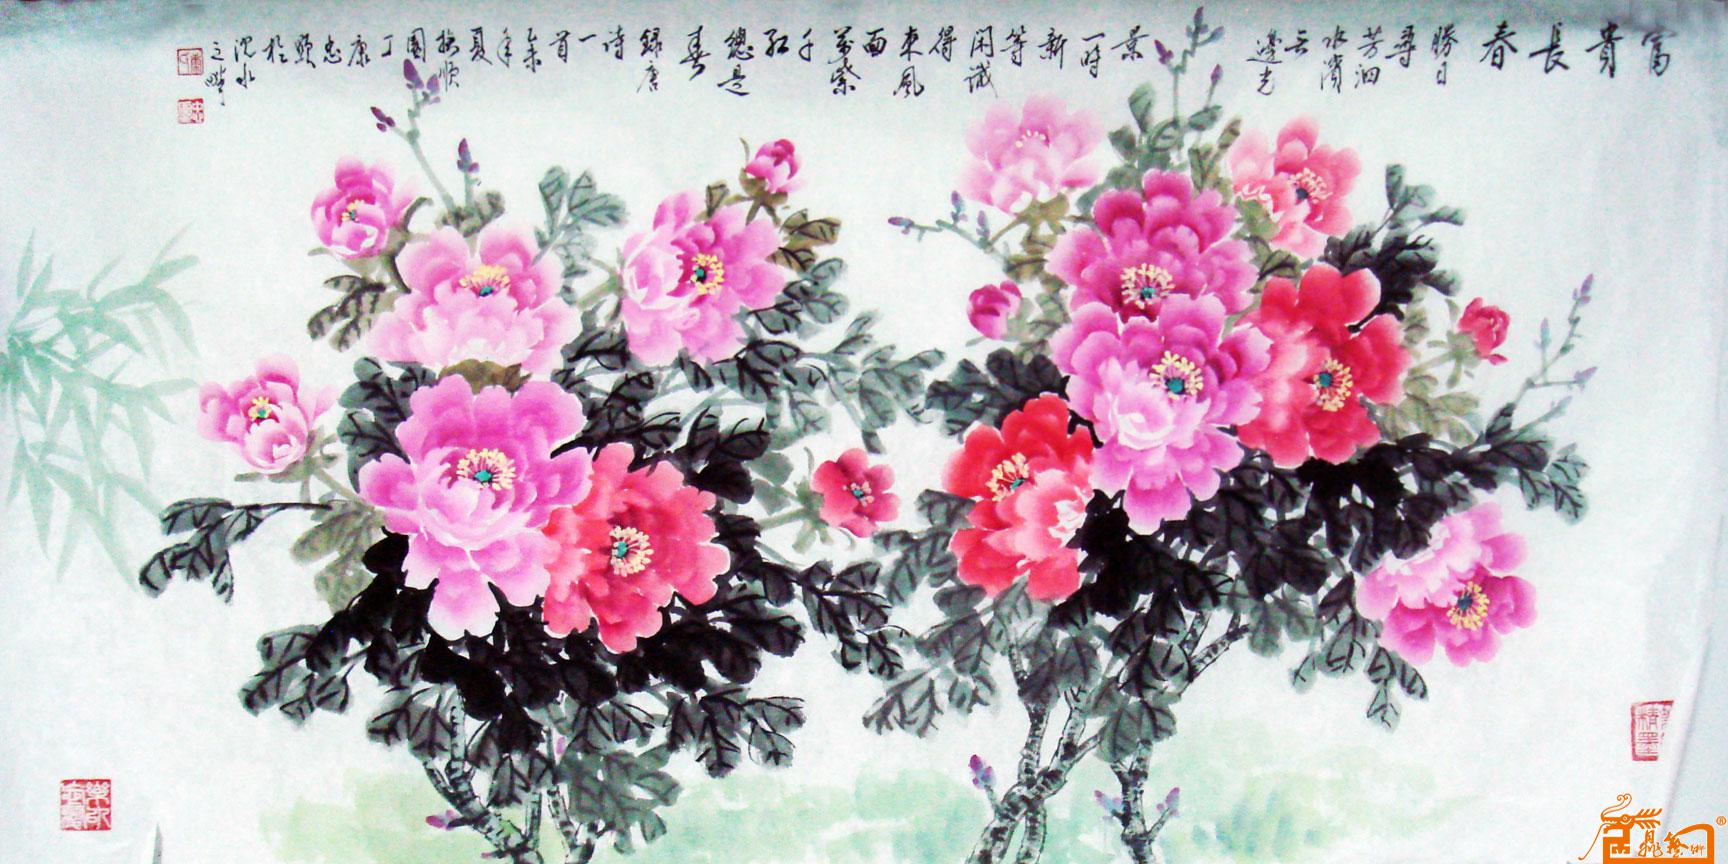 中国花鸟名家康忠显期权艺术收藏 中国书画交